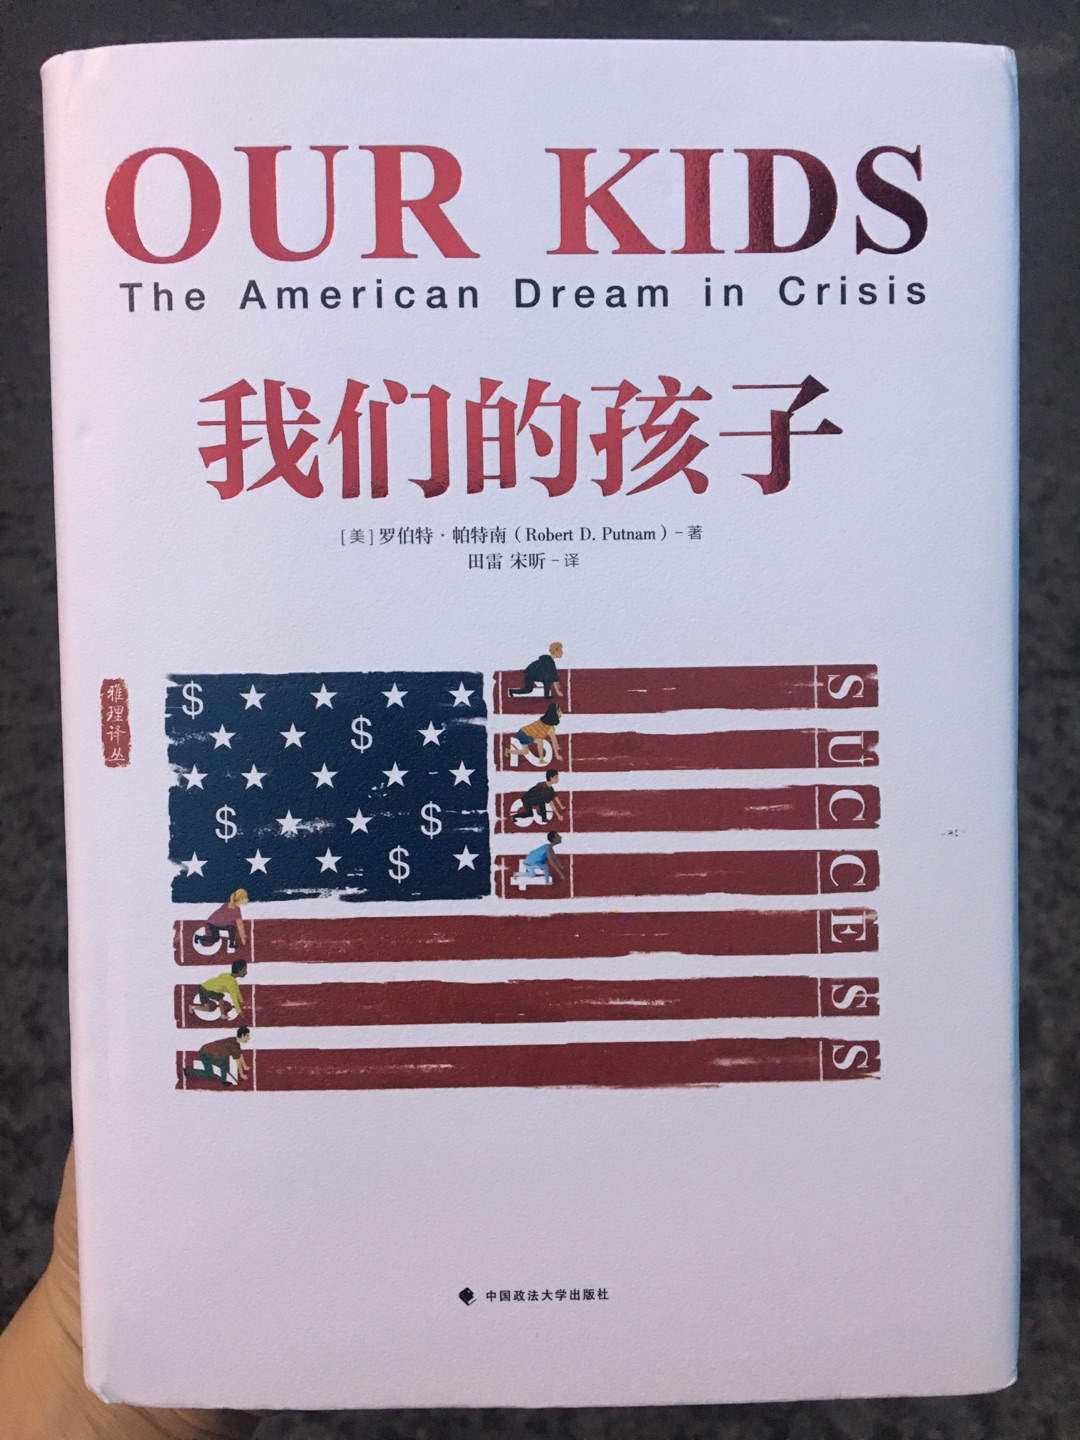 中国的现状，正如美国的五十年代。这本书对我们最大的启迪应该是思索如何不让当前的中国逐渐演变成为阶层固化严重的美国，尽管这种阶层分化已然在悄悄形成。这本书好贵啊